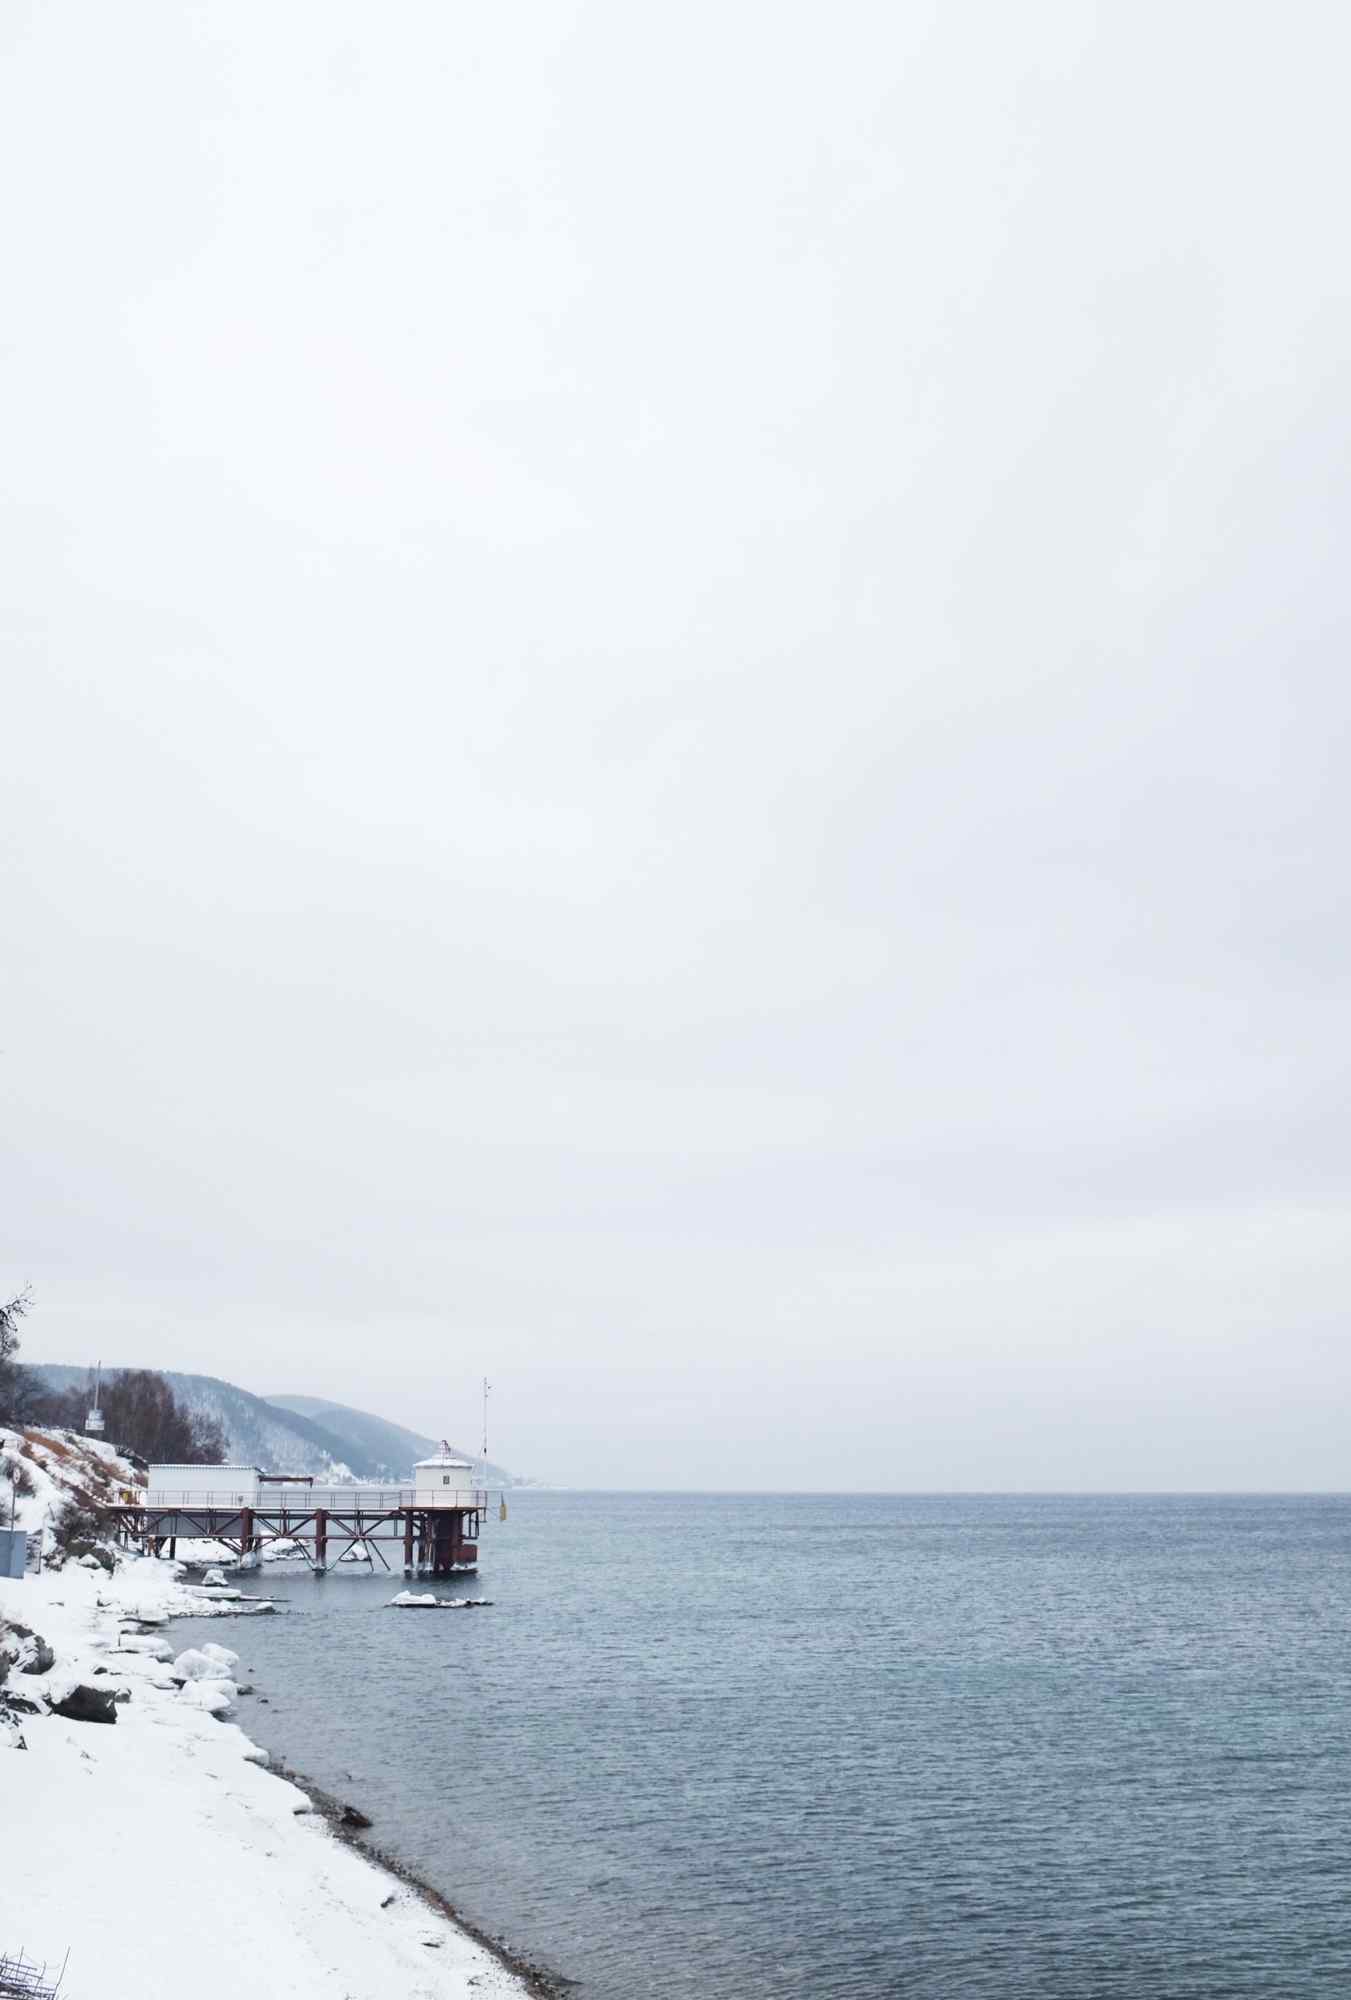 贝加尔湖冬日风景图片手机壁纸